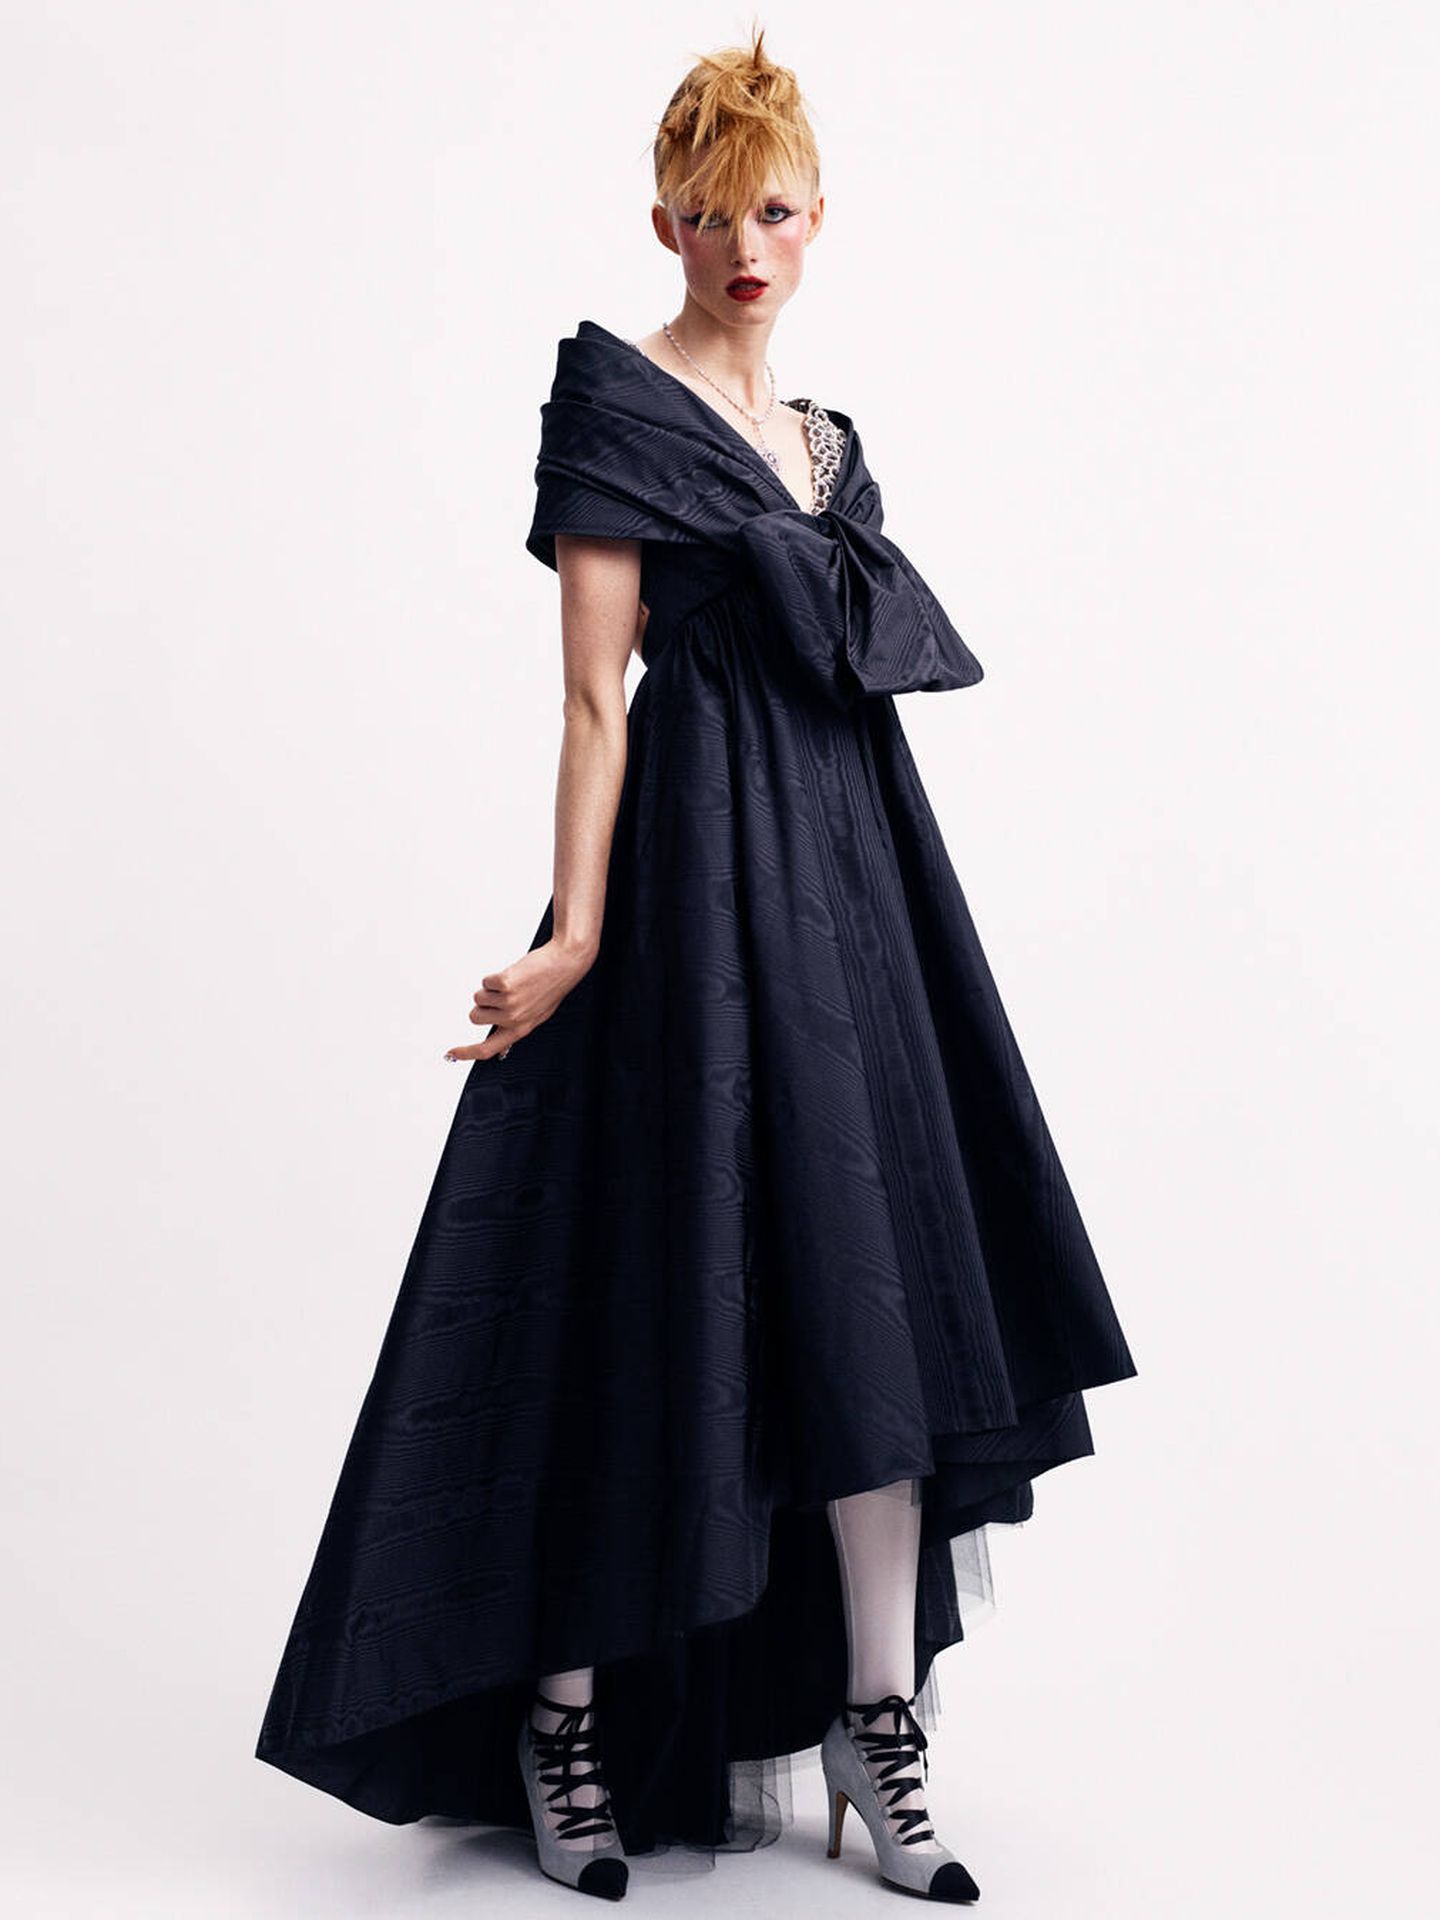 El vestido de alta costura de Chanel que inspiró el traje de novia de Nina Flohr. (Imaxtree)